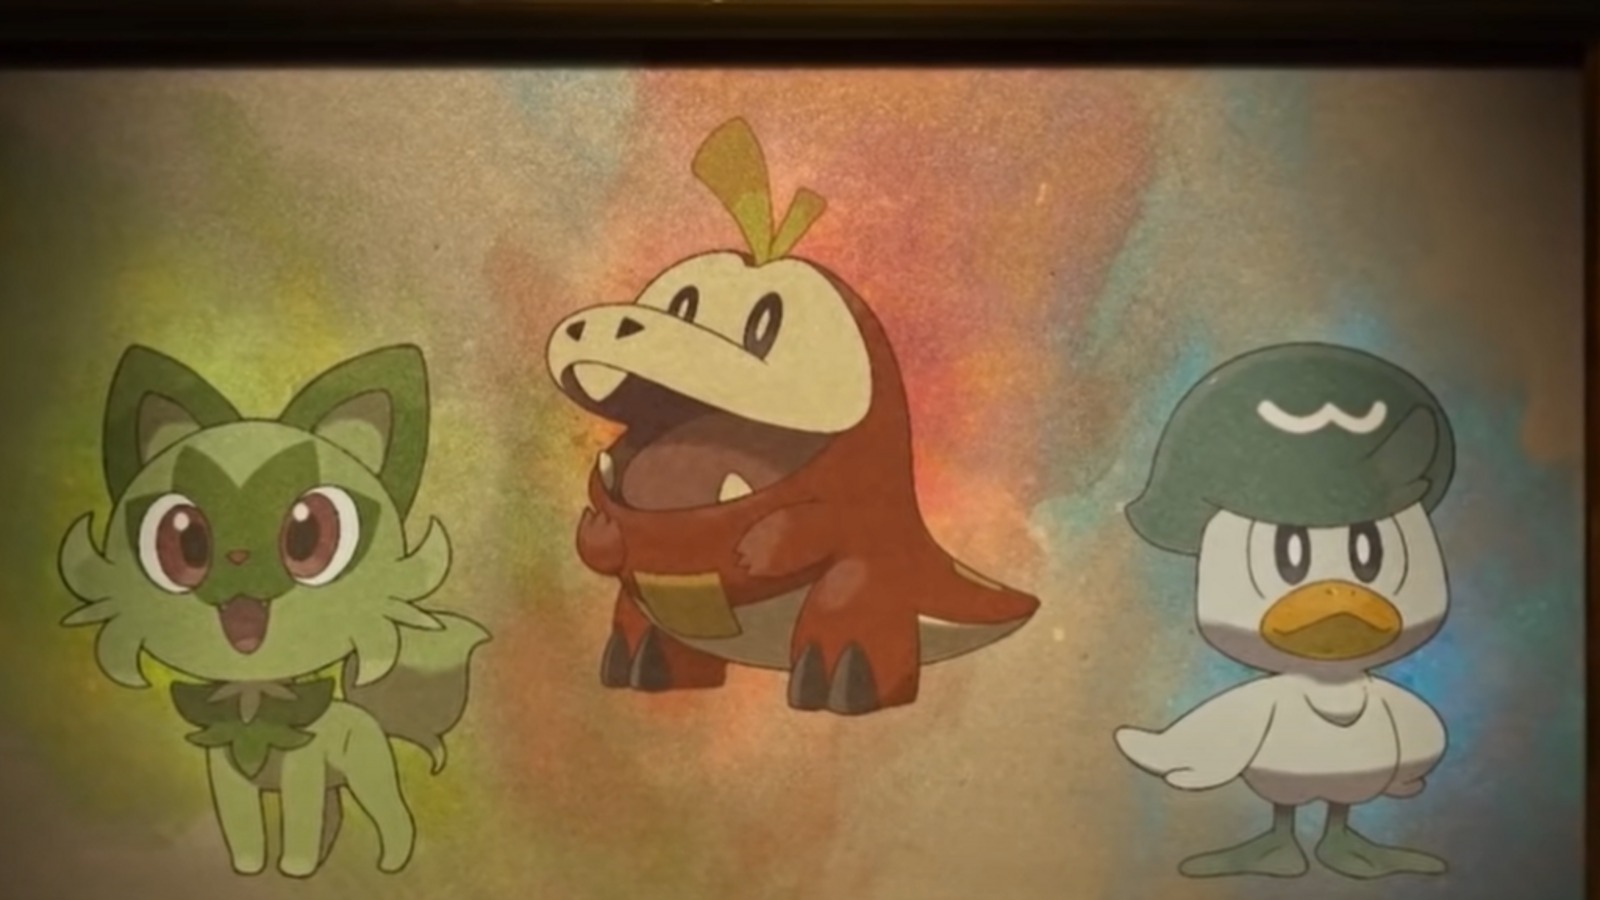 Die neuen Pokémon-Starter: Felori, Krokel und Kwaks (von links nach rechts)Foto: Game Freak / The Pokémon Company